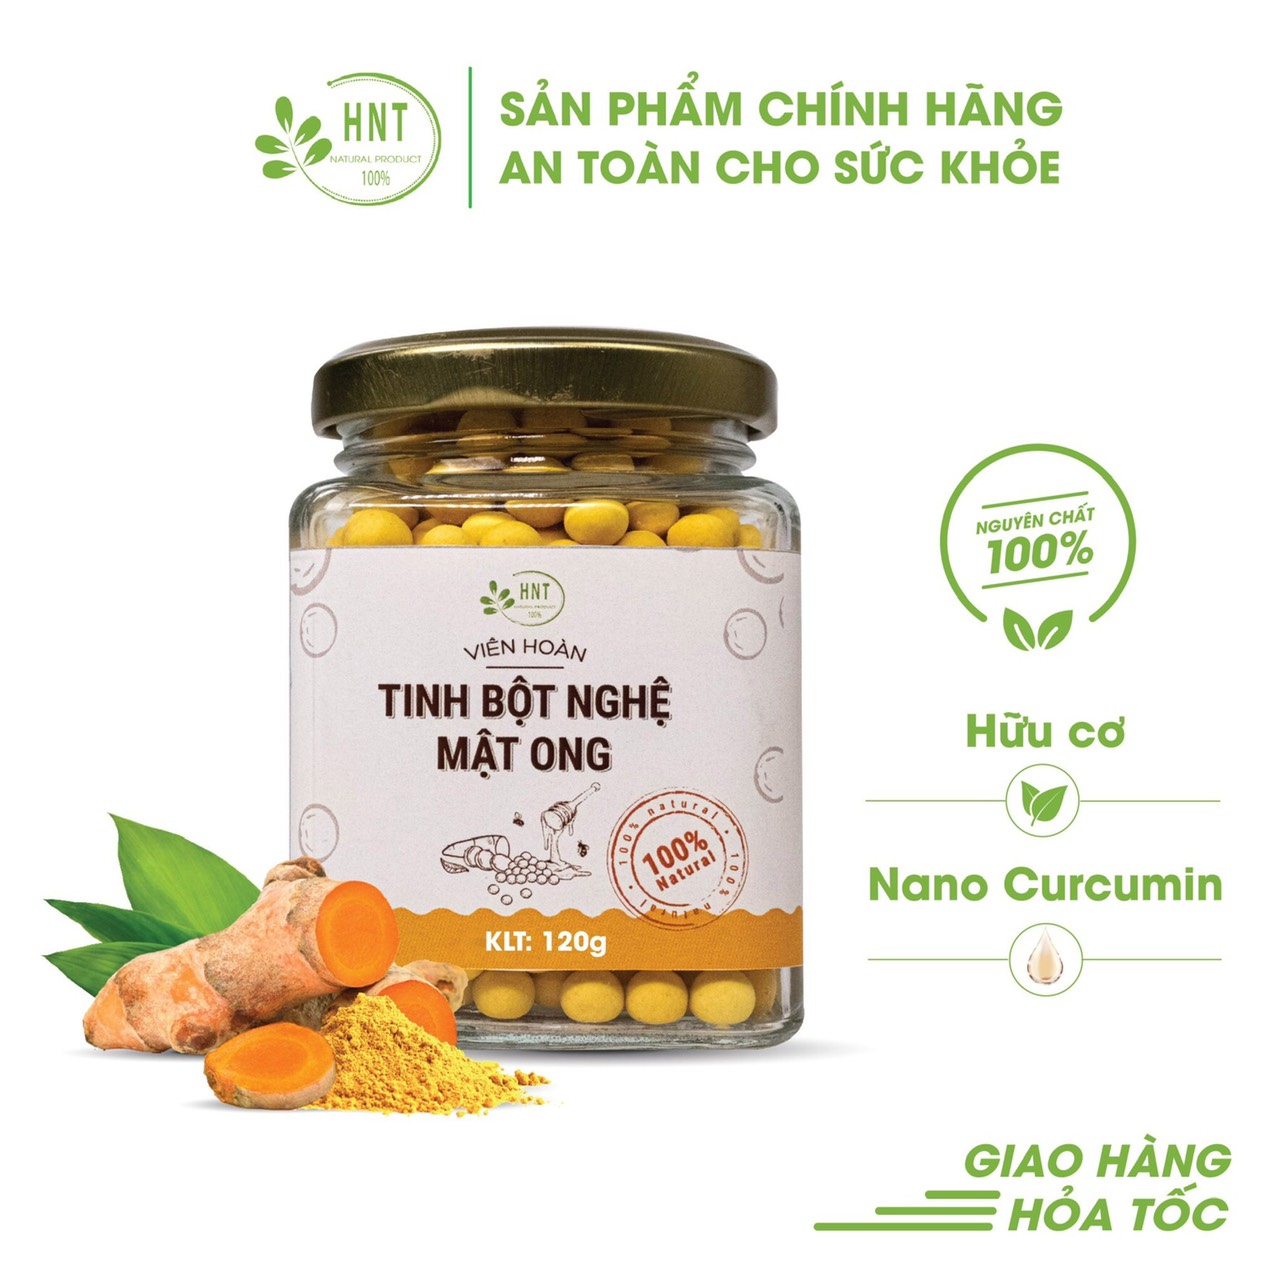 Tinh bột nghệ mật ong - Công Ty TNHH Nông Sản Sạch HNT